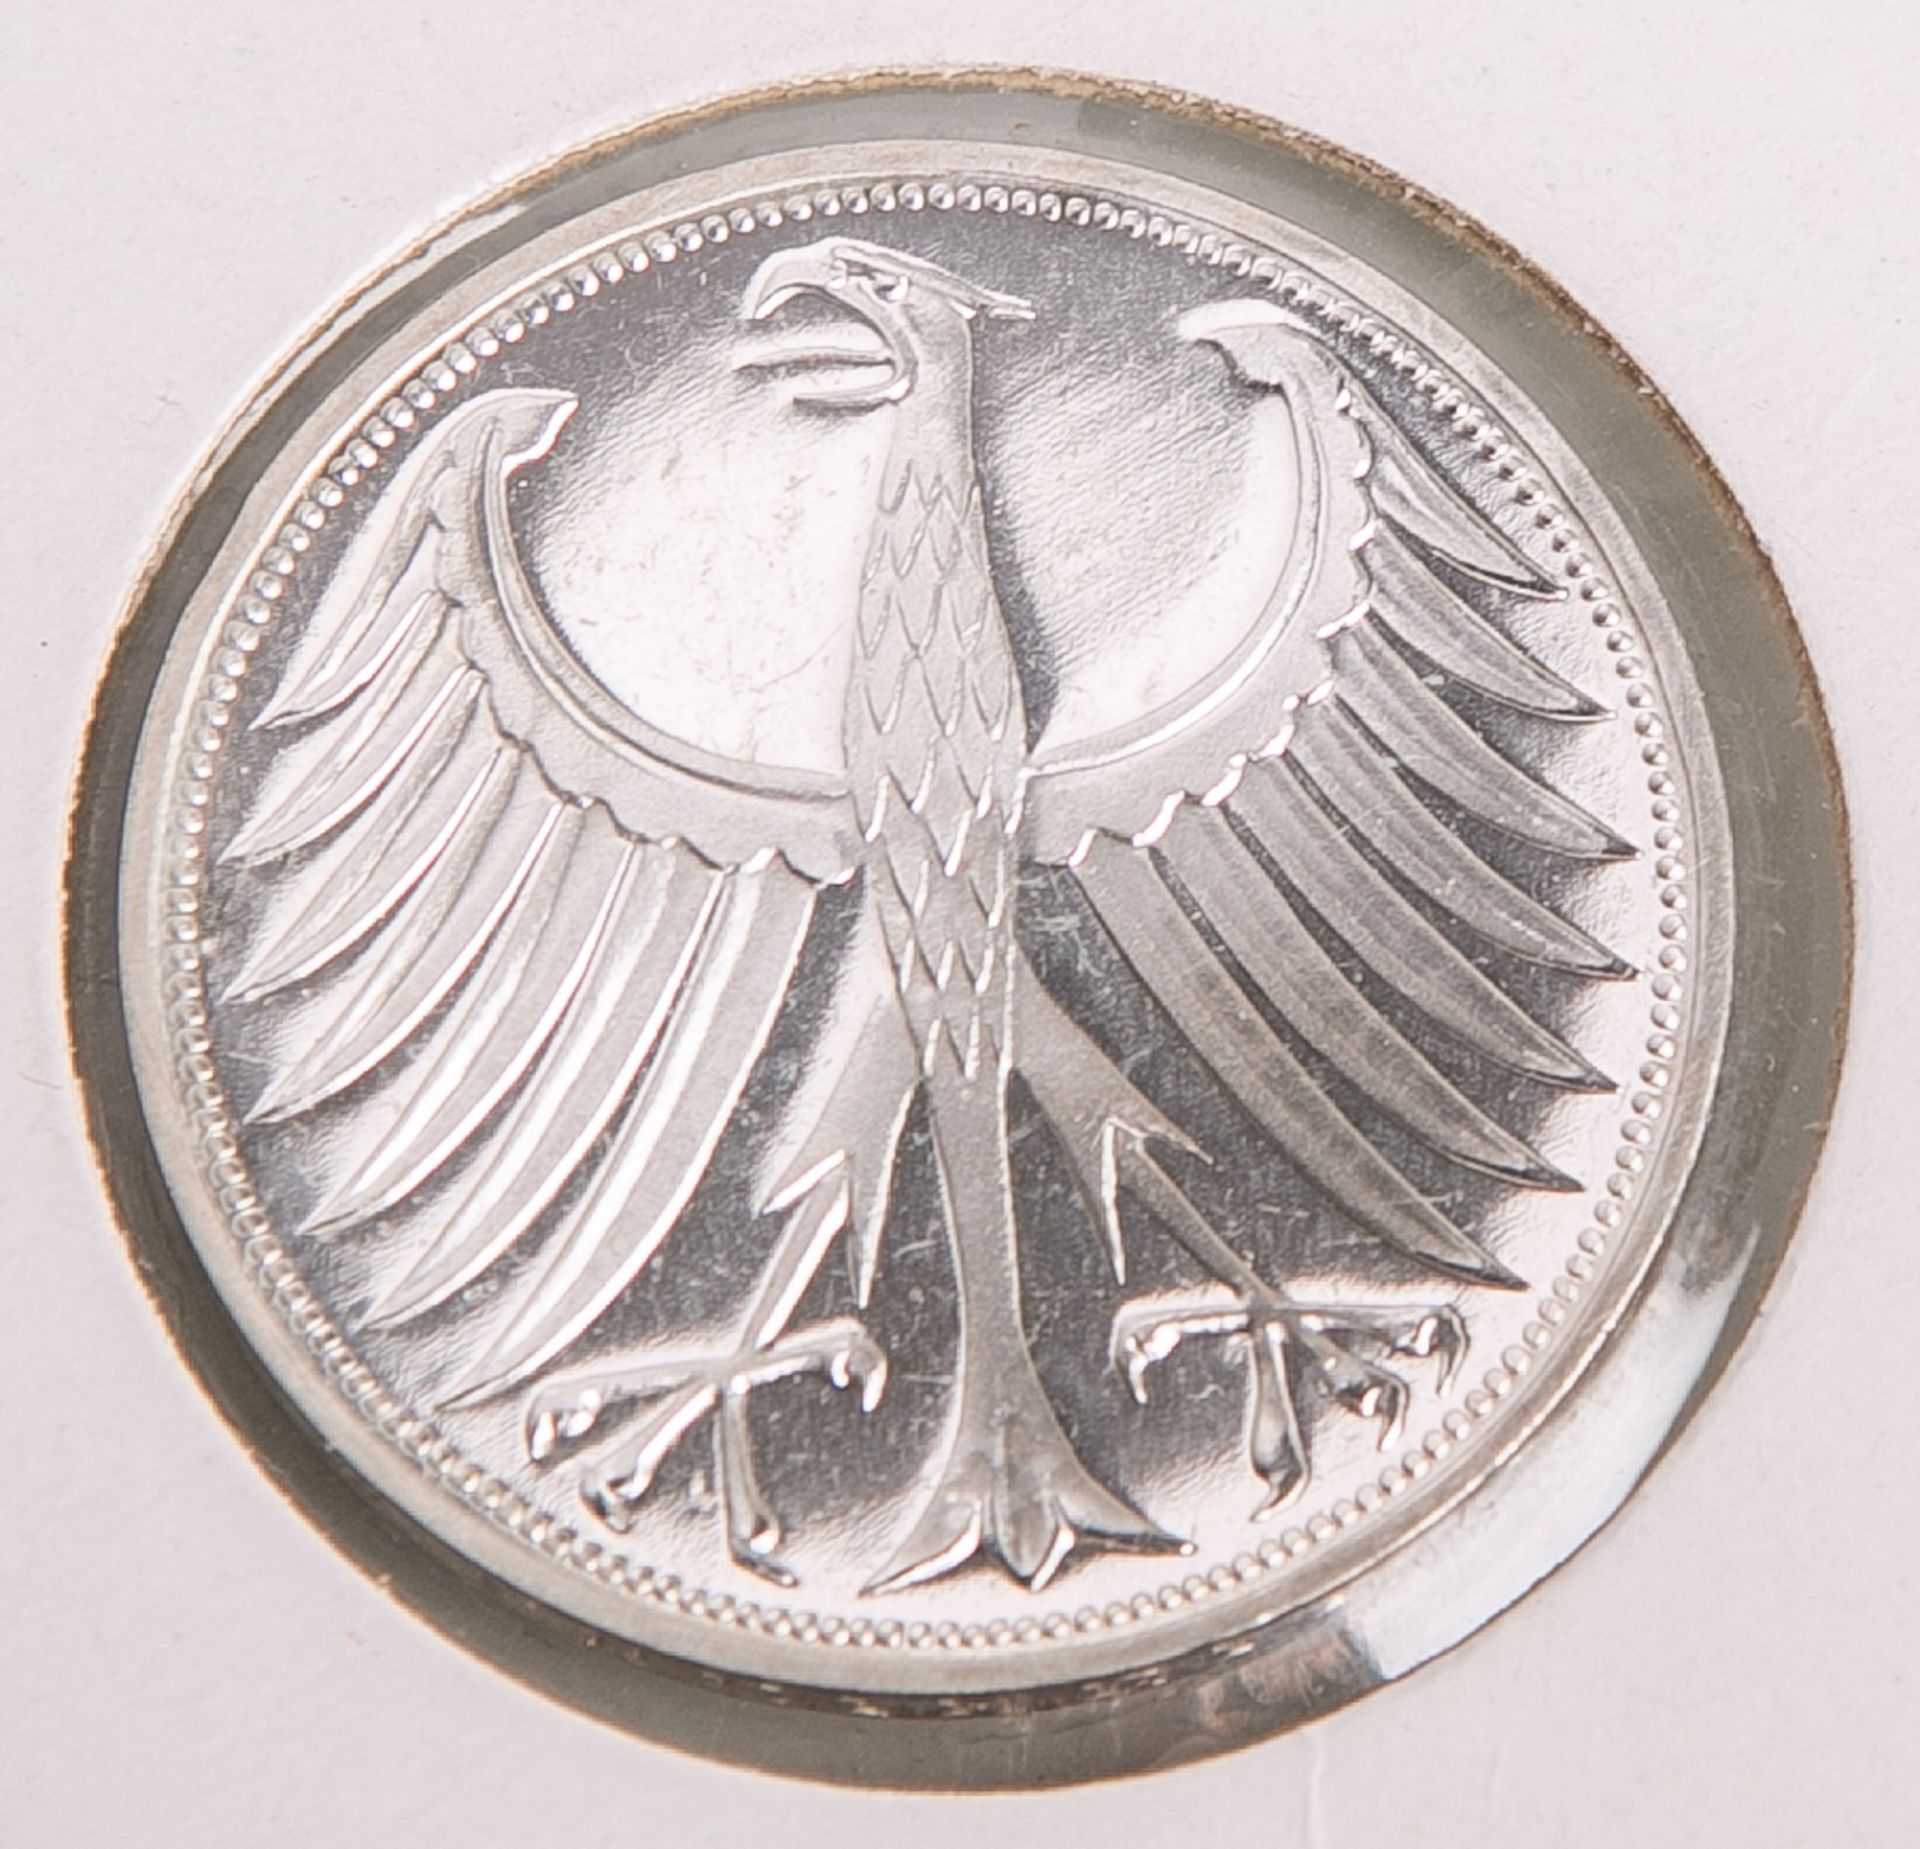 5 DM-Münze "Silberadler" (BRD, 1967), Münzprägestätte: G, eingeschweißt. PP. - Bild 2 aus 2